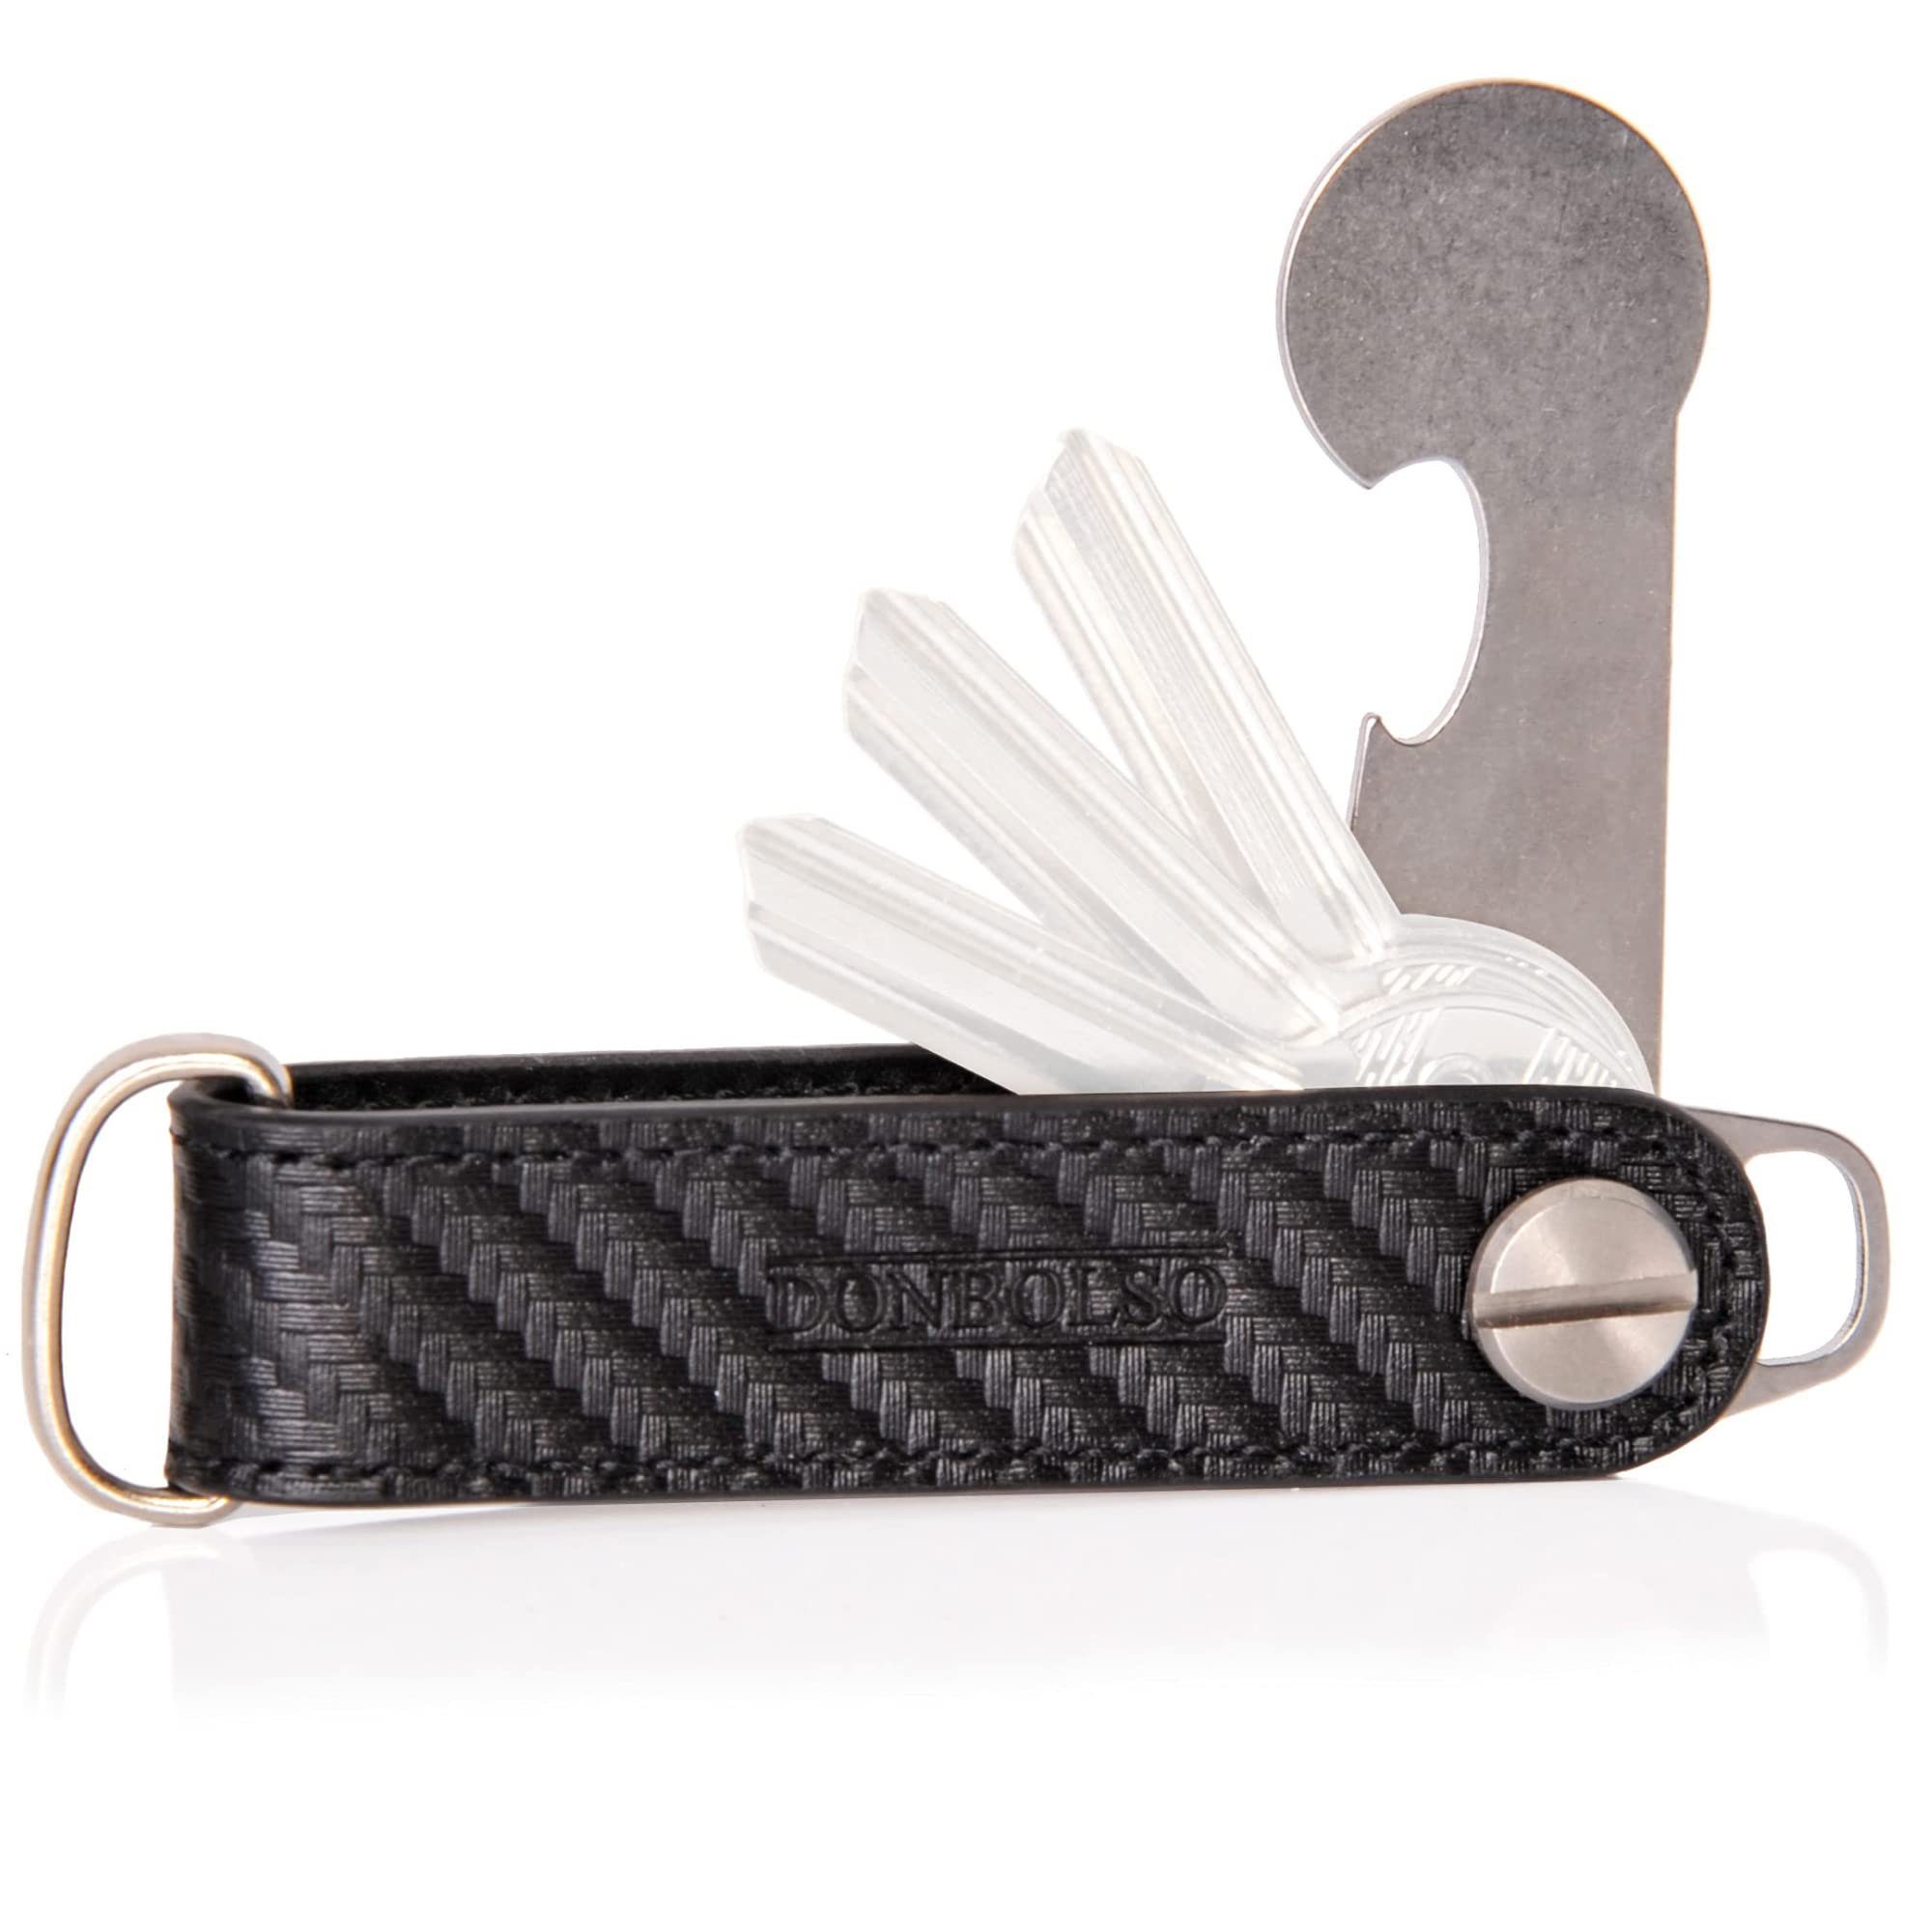 Donbolso Schlüsseltasche Leder Schlüsselorganizer mit Einkaufswagenlöser & Edelstahlscheibe, Carbon-Schwarz Edelstahl Sschlüssel Organizerleder / Edelstahl